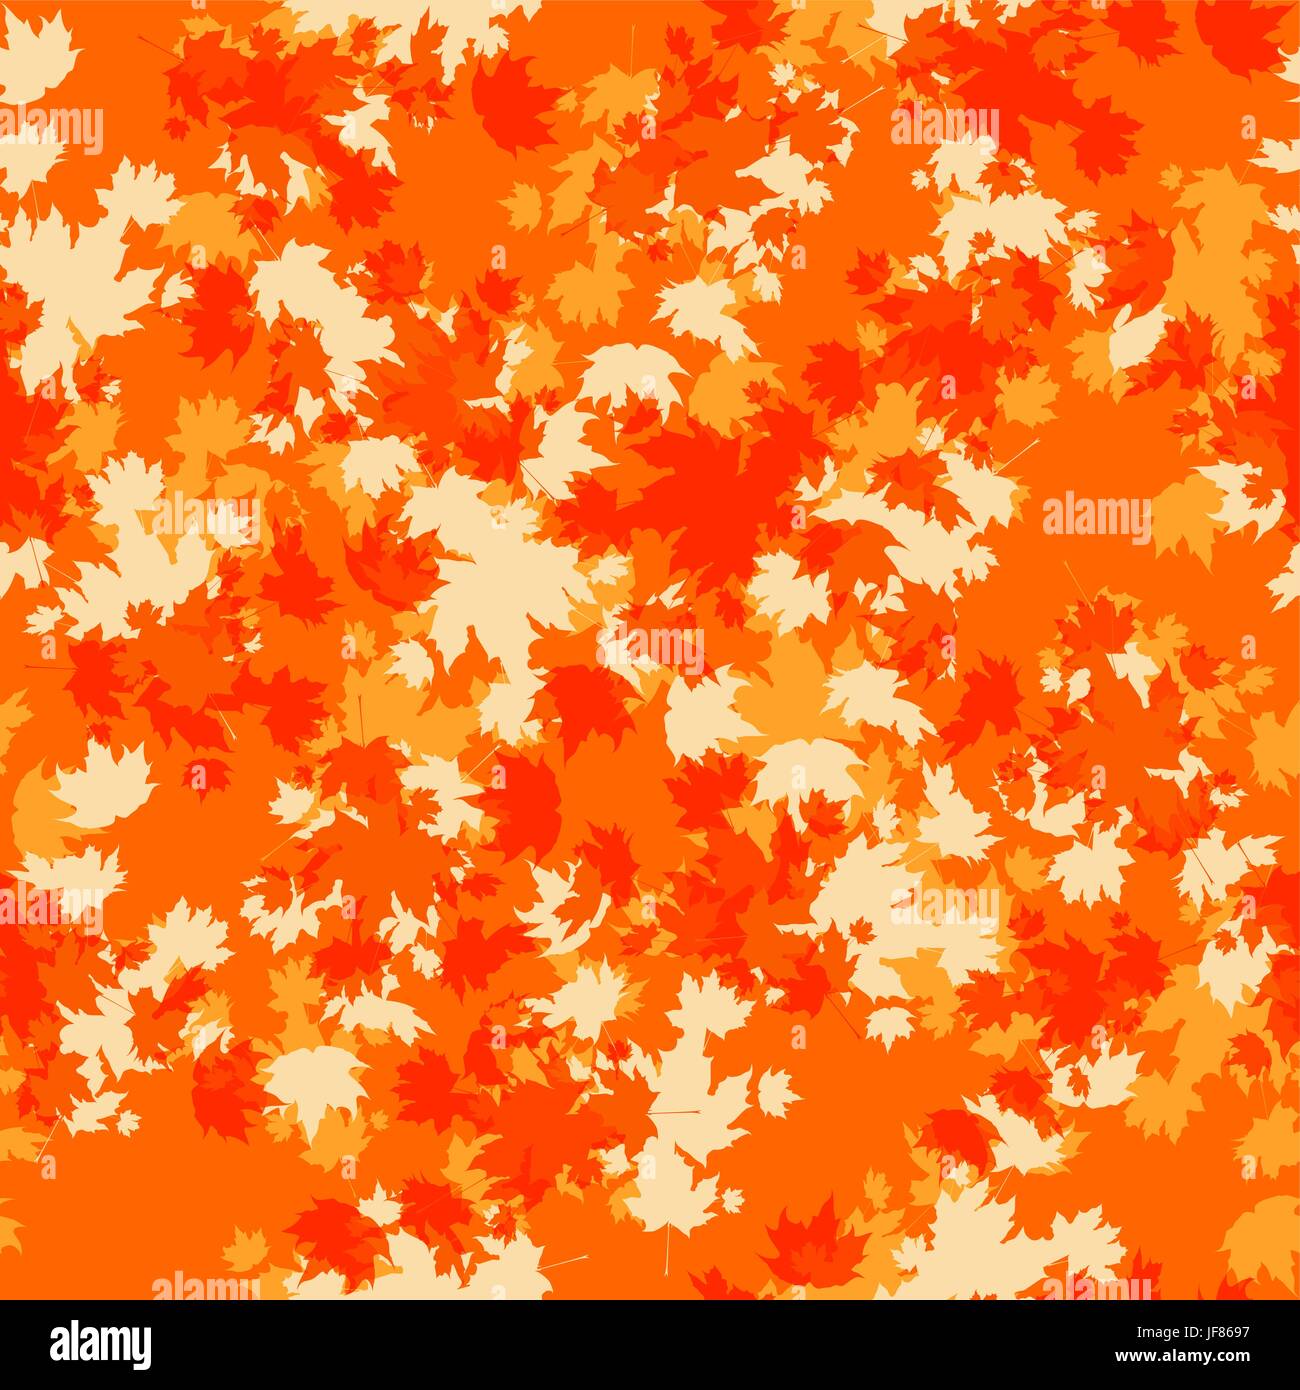 Orange autumn seamless Stock Vector